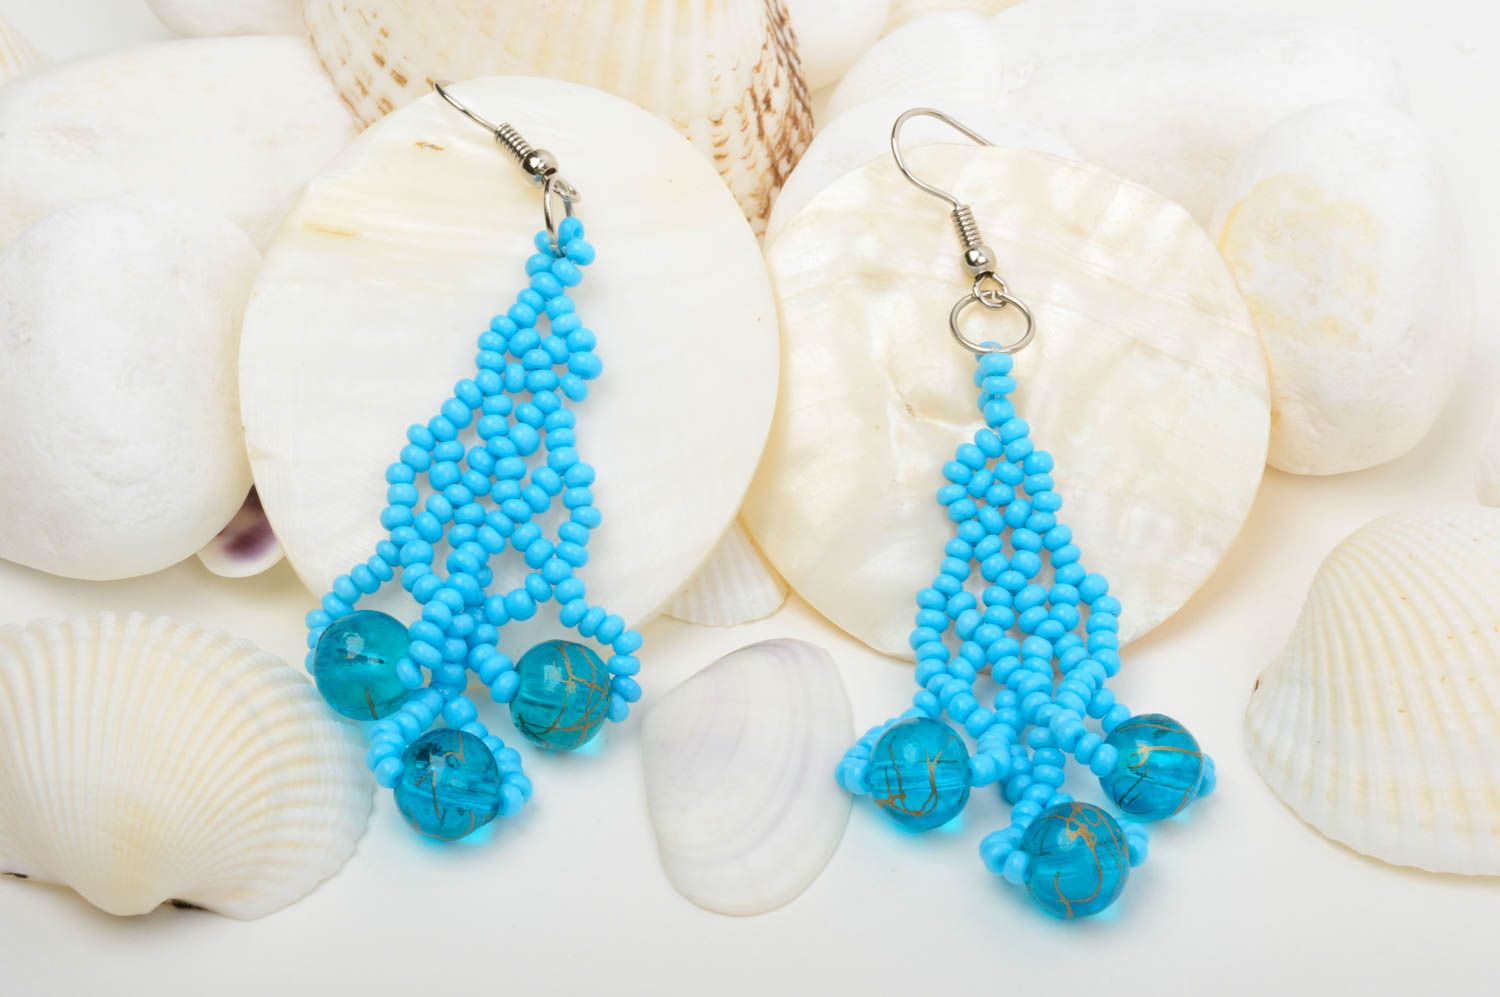 Handmade earrings designer earrings beaded earrings for women gift ideas photo 1